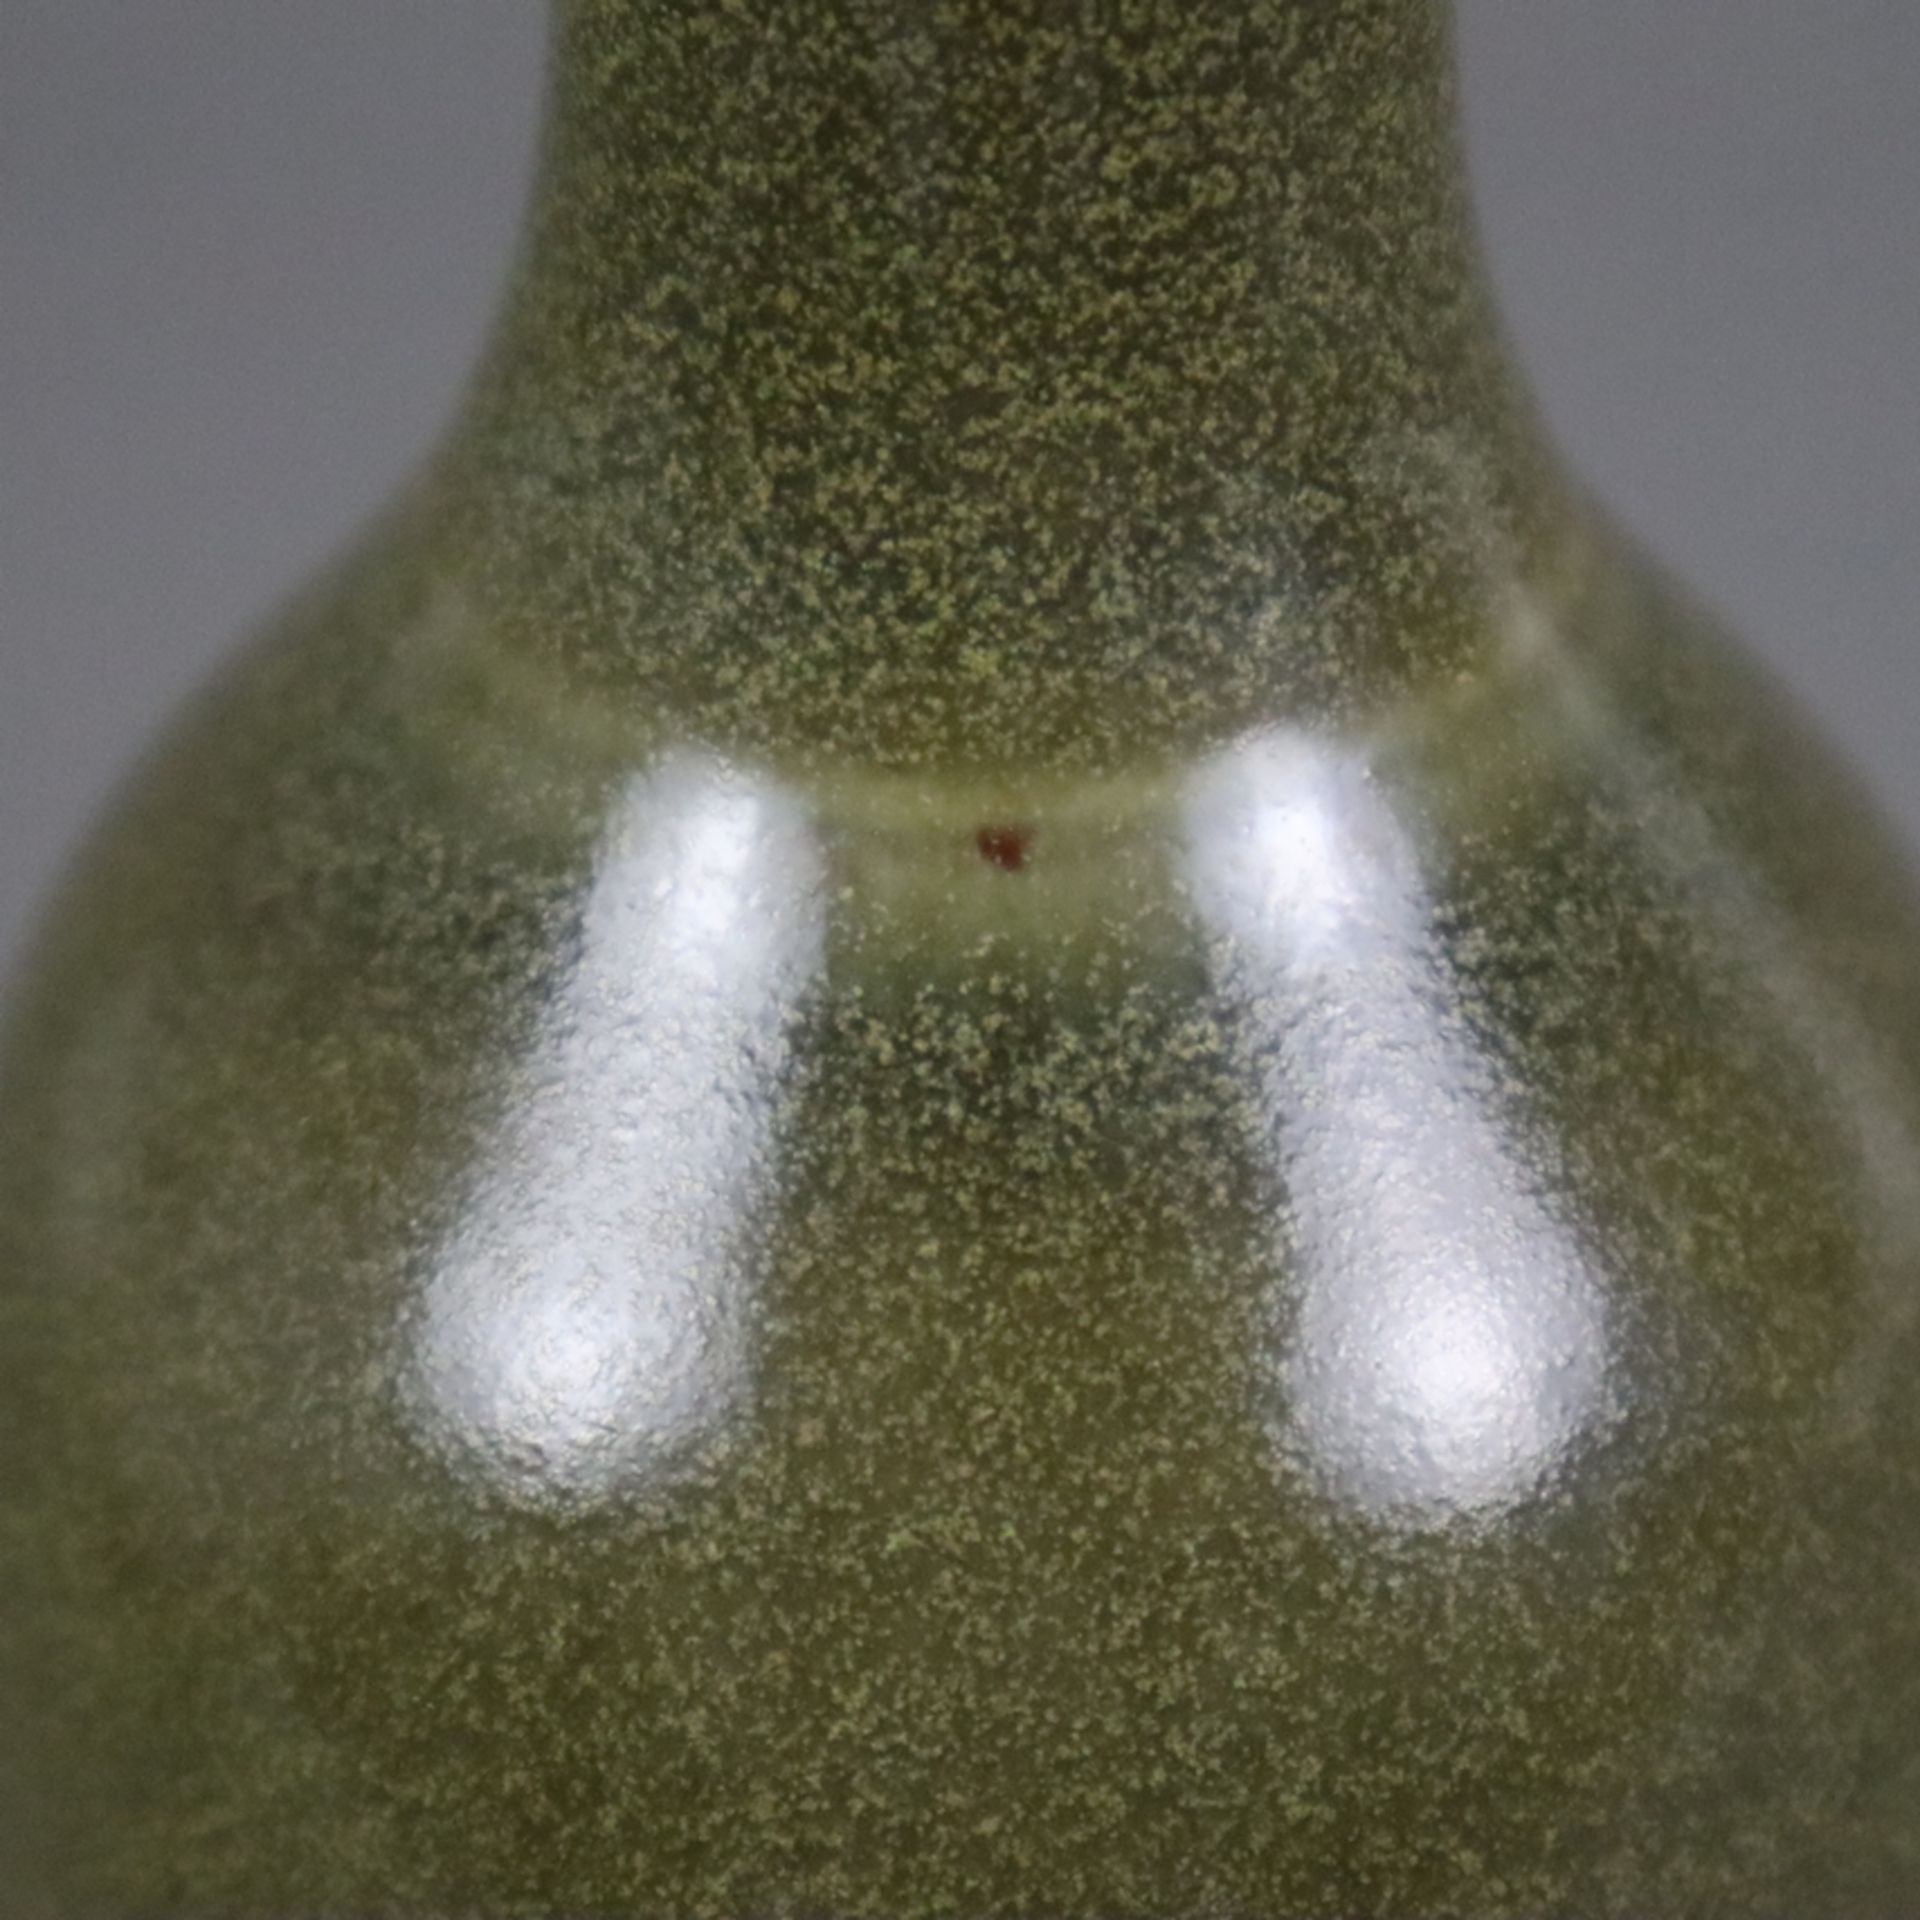 Kleine Flaschenvase - China 20.Jh., Porzellan mit "Teedust"-Glasur, innen und unterseitig transpare - Bild 6 aus 7